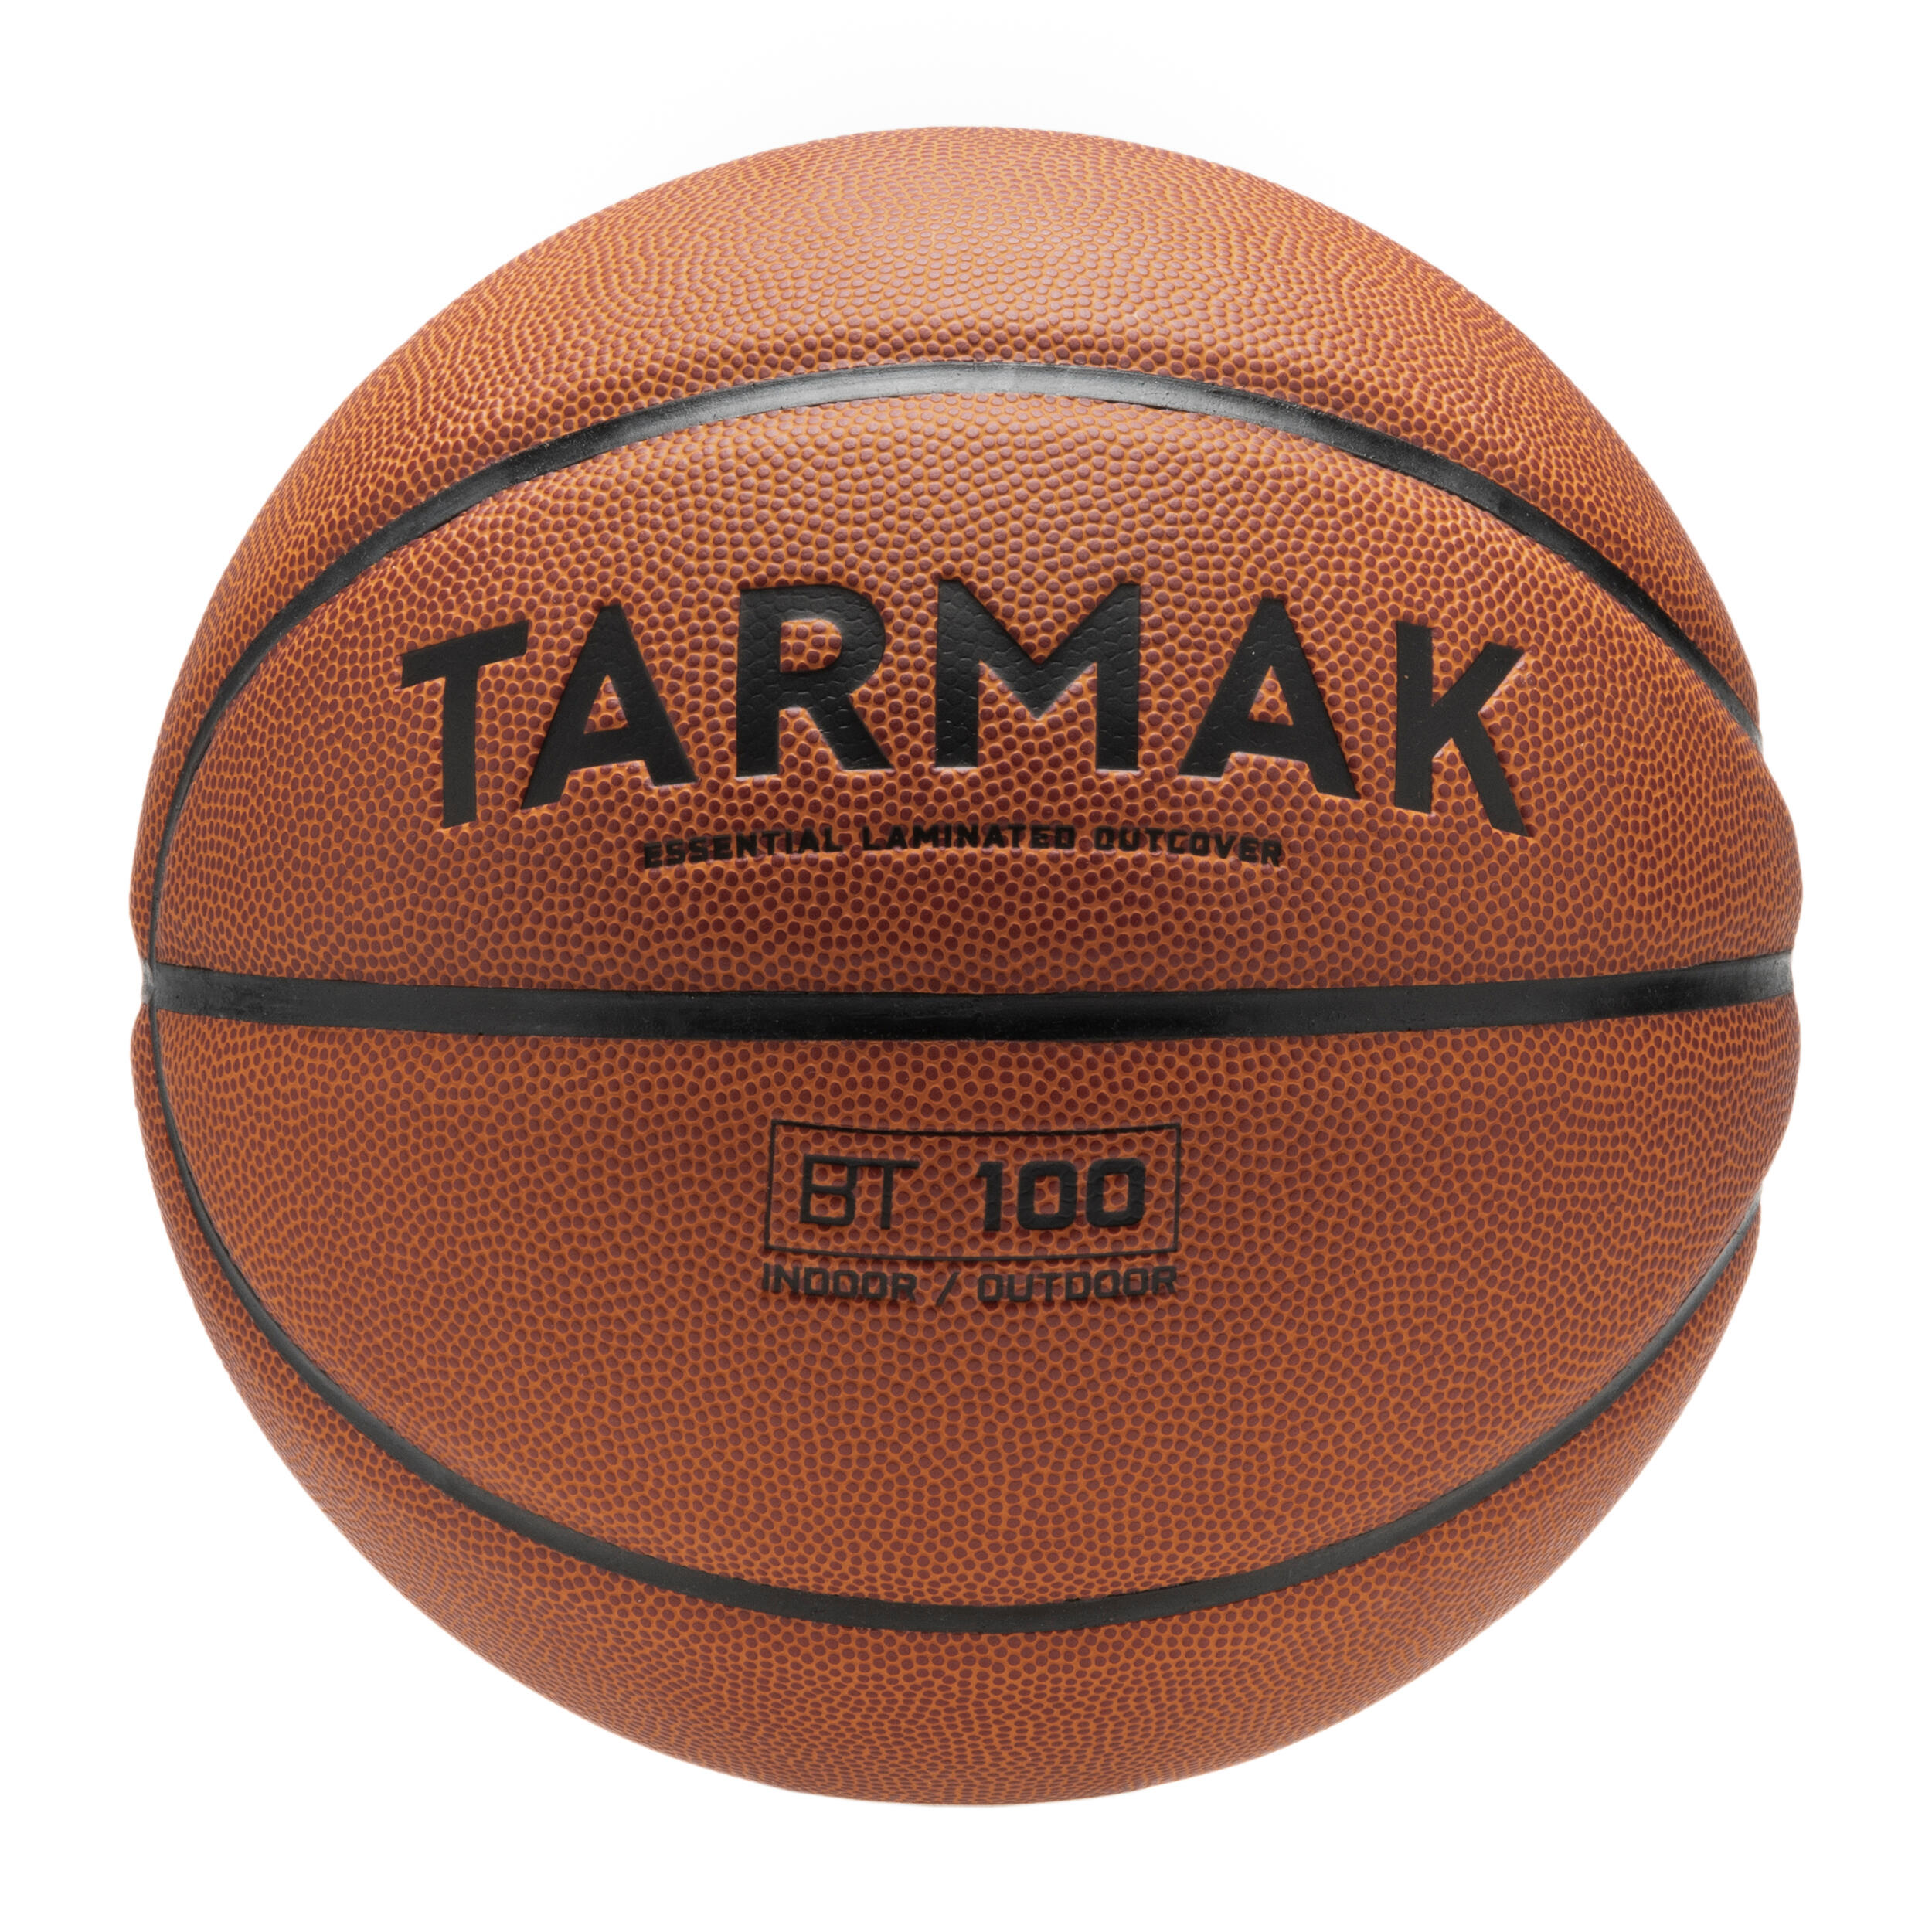 Оранжевый баскетбольный мяч BT100 размера 5 для детей до 10 лет, для начала. Tarmak